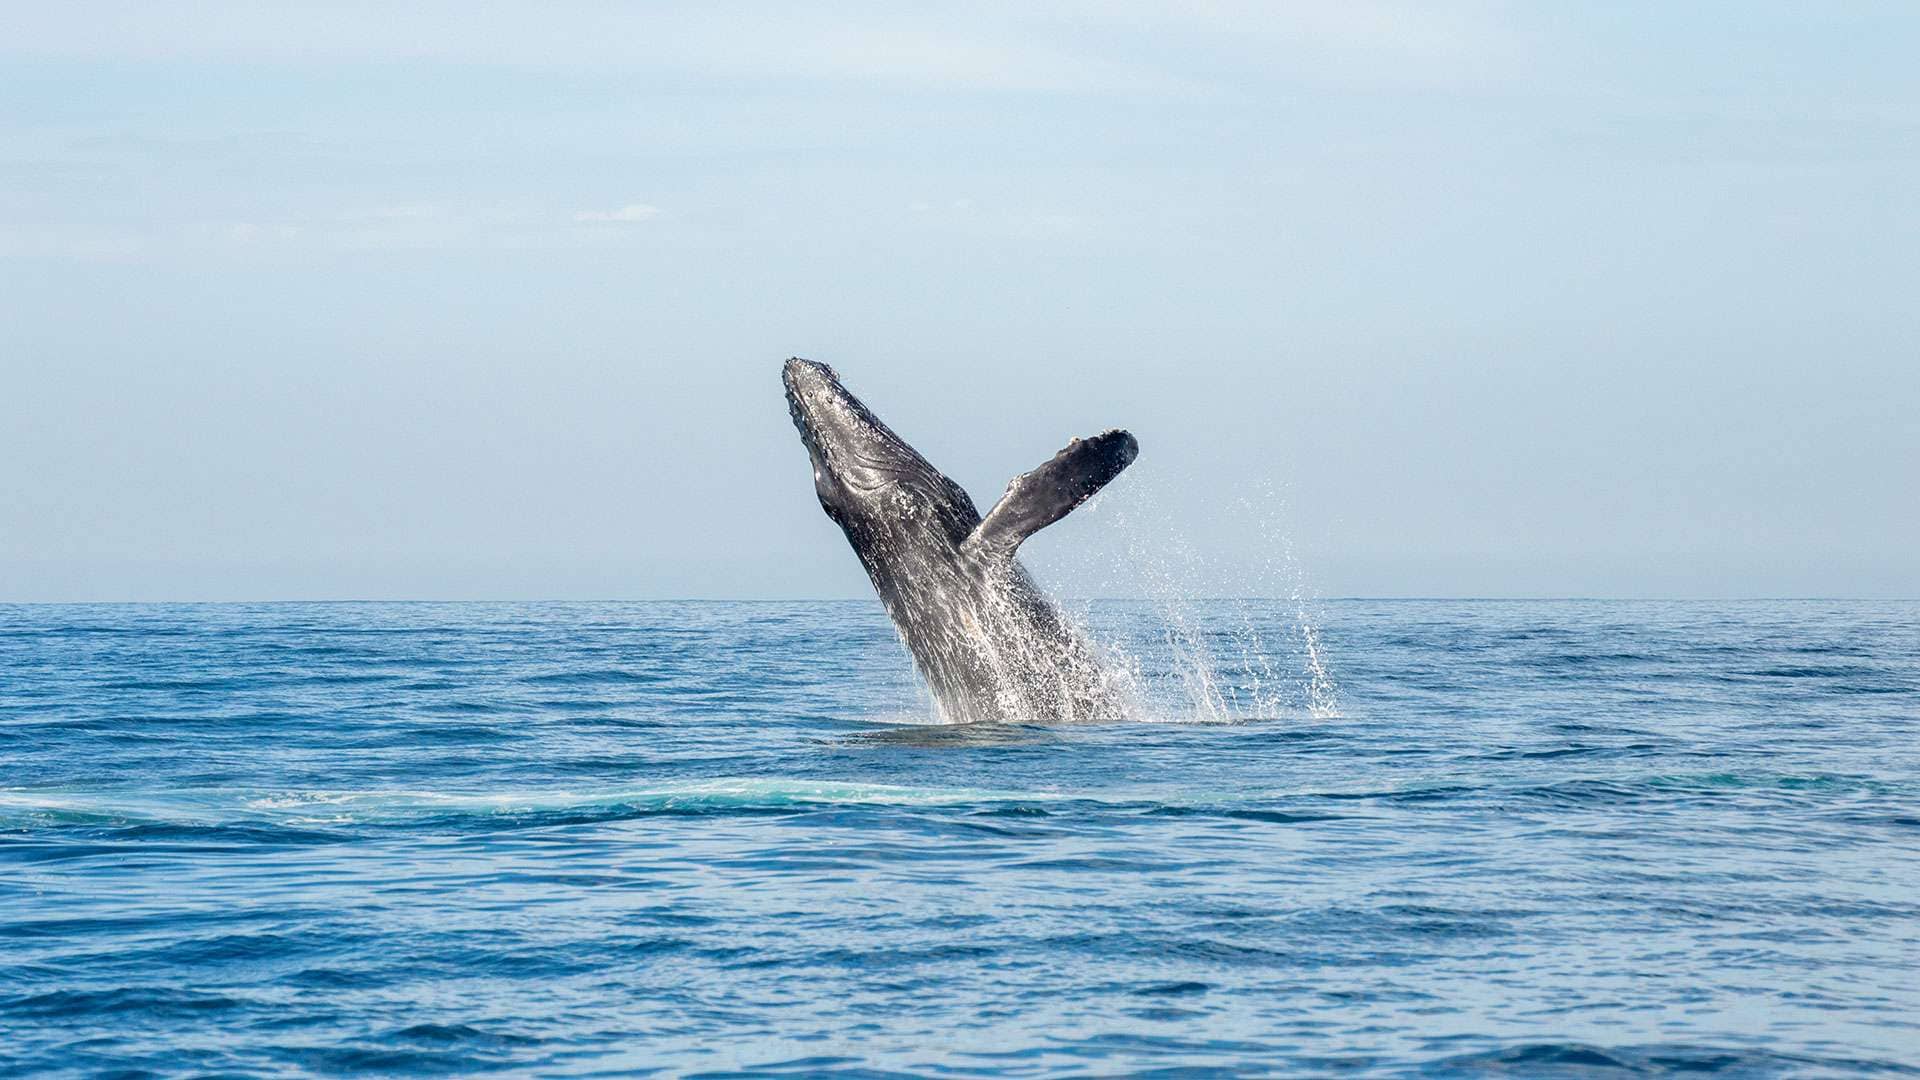 La temporada ideal para disfrutar del avistamiento de estos gigantes tiene lugar entre diciembre y abril. En ese período, los animales dan a luz a sus ballenatos y les enseñan cómo alimentarse.